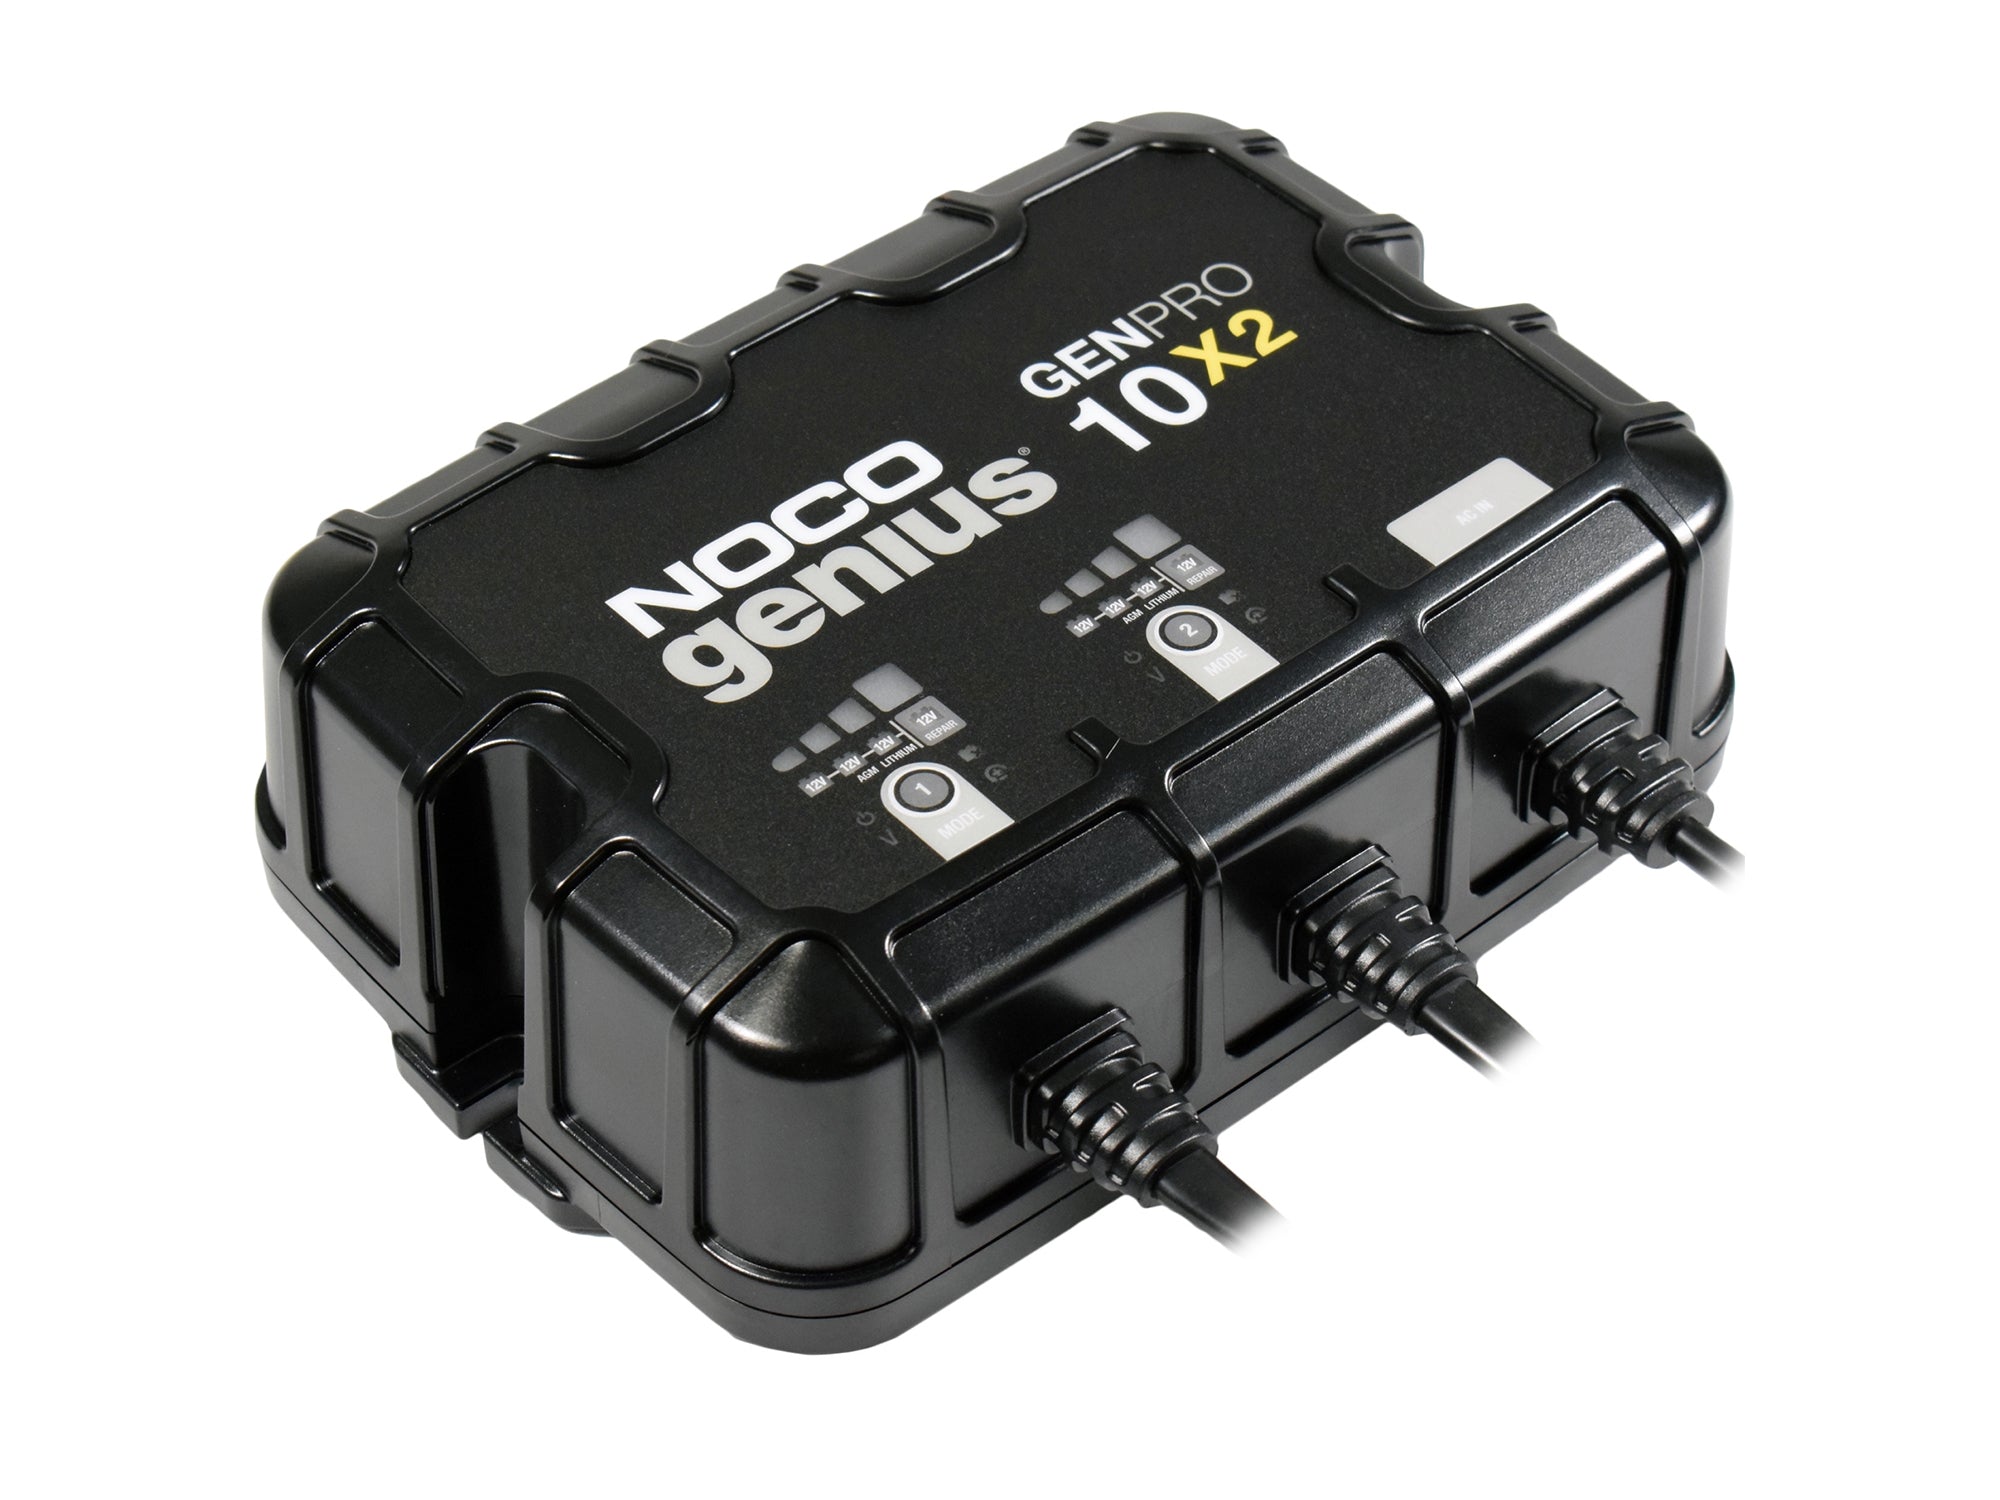 Koop uw Noco Genius Battery Charger Smart Pro G26000E bij SBI